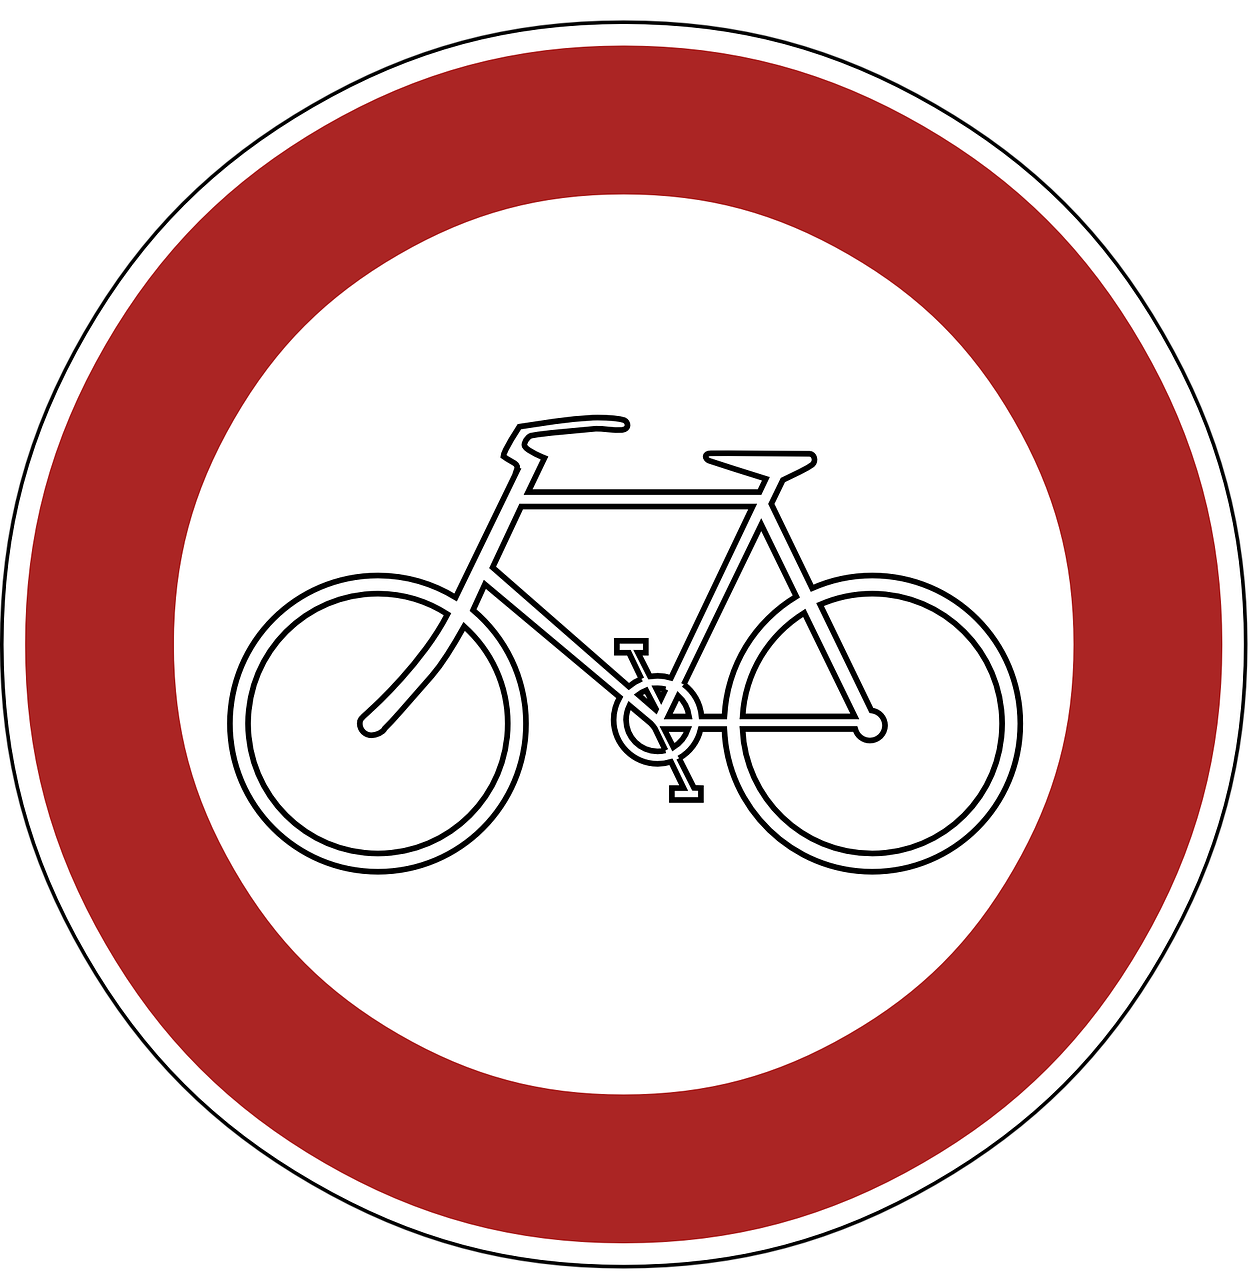 ban cyclists warning free photo